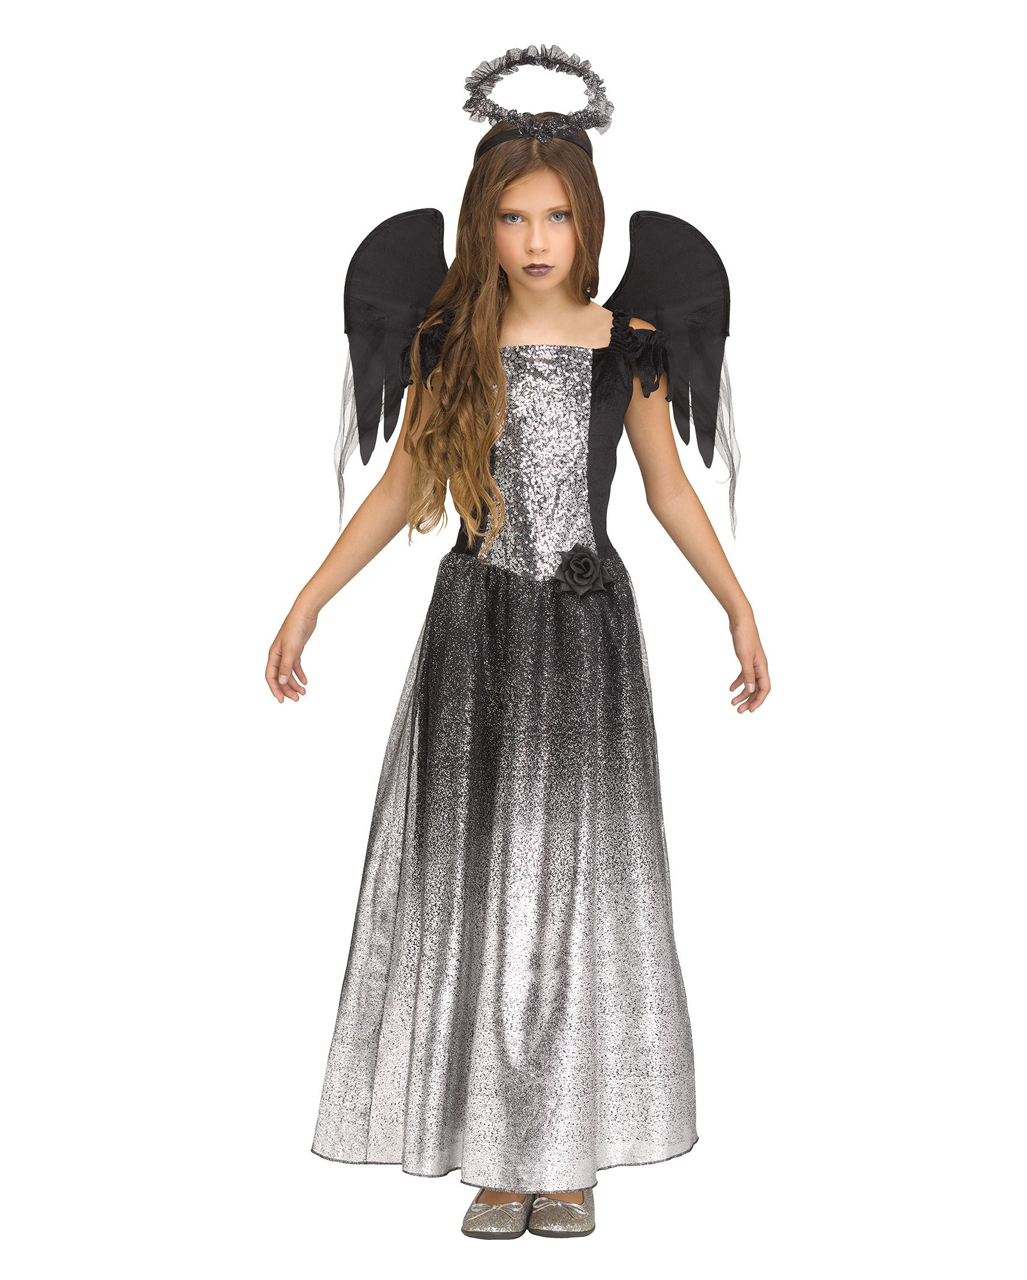 Schwarz-Silbernes Engel Kostüm für Kinder, Karnevalskostüm